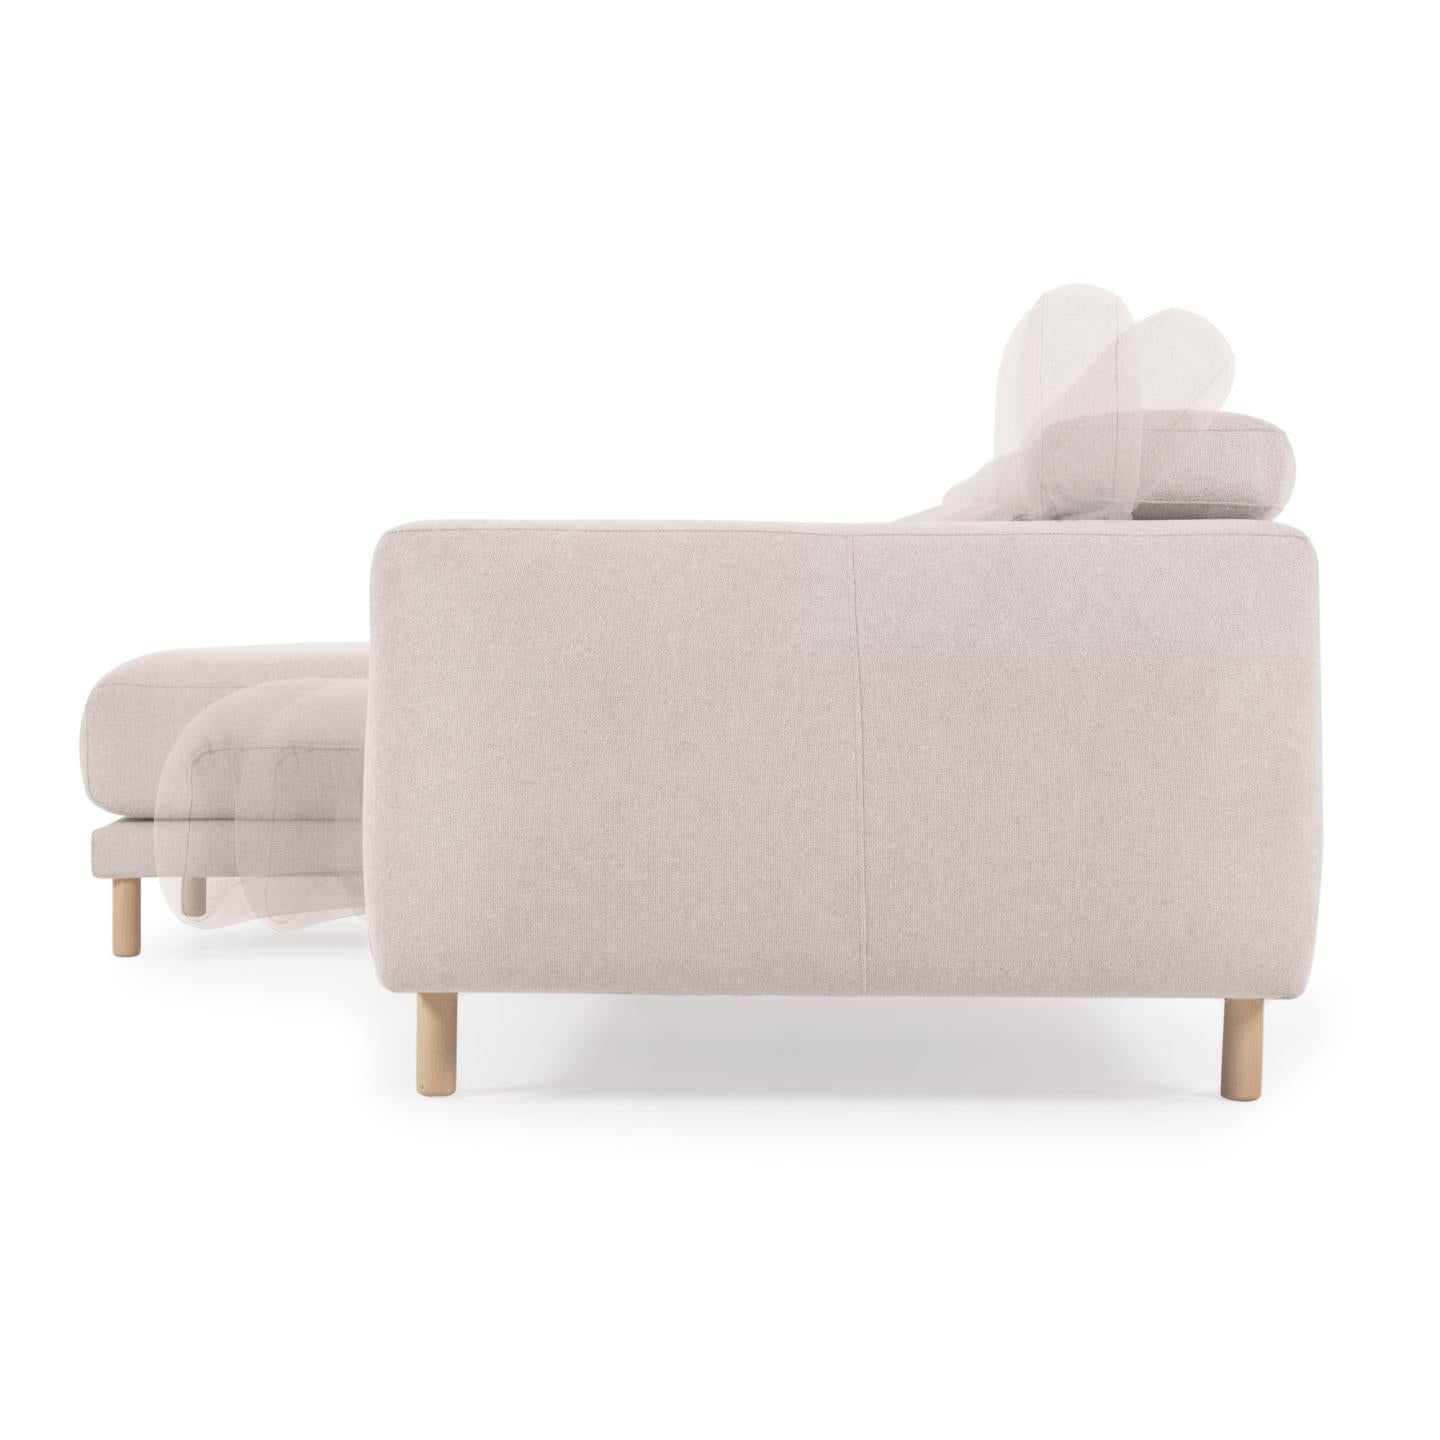 Singa 3 személyes kanapé bal oldali fekvőfotellel, fehér színben, 296 cm